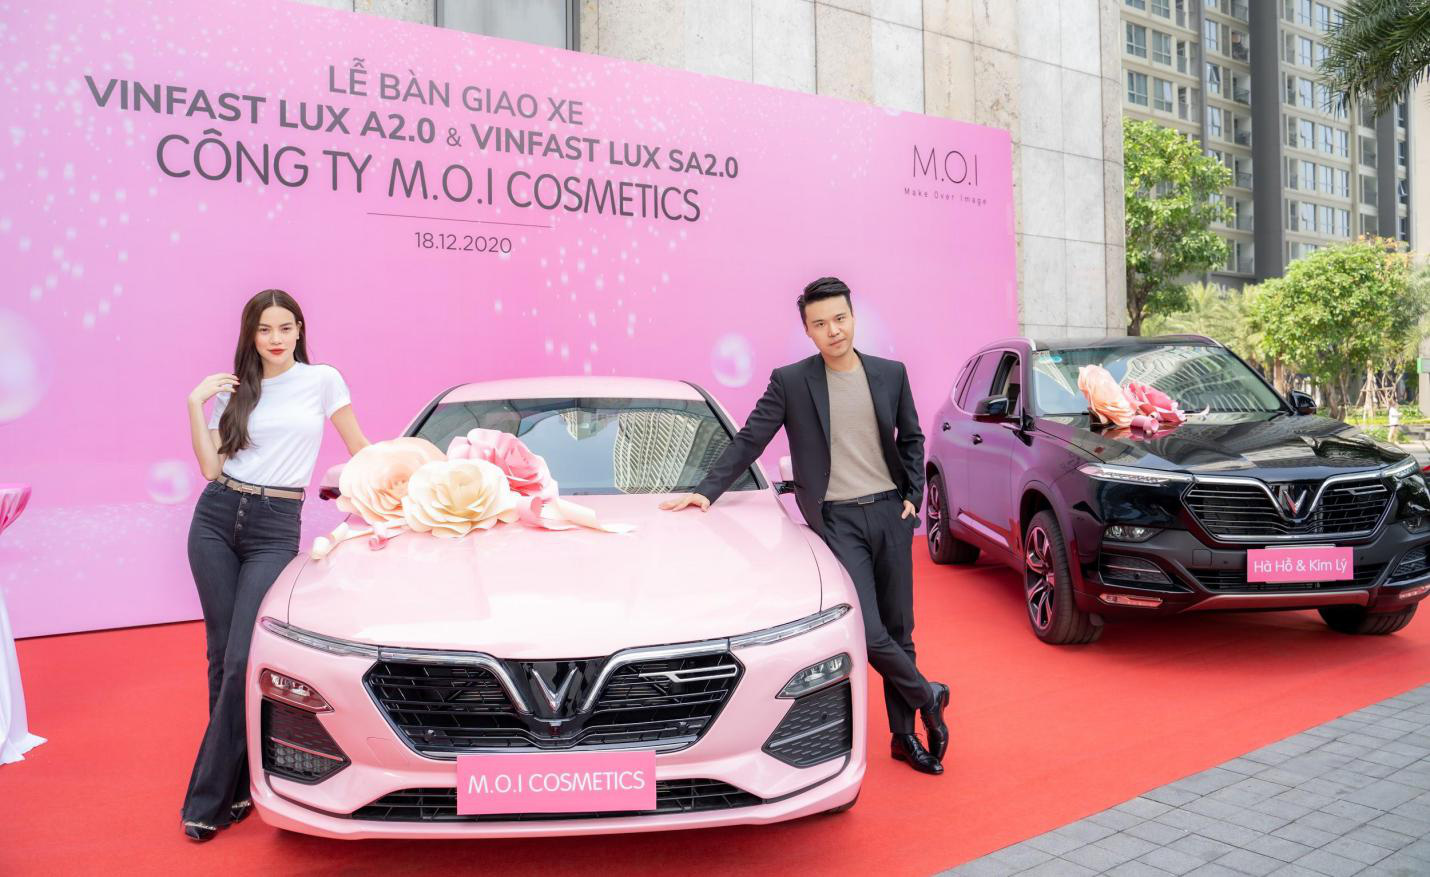 Hồ Ngọc Hà và Kim Lý sánh đôi đi mua một lúc 2 xe ôtô VinFast - Ảnh 2.